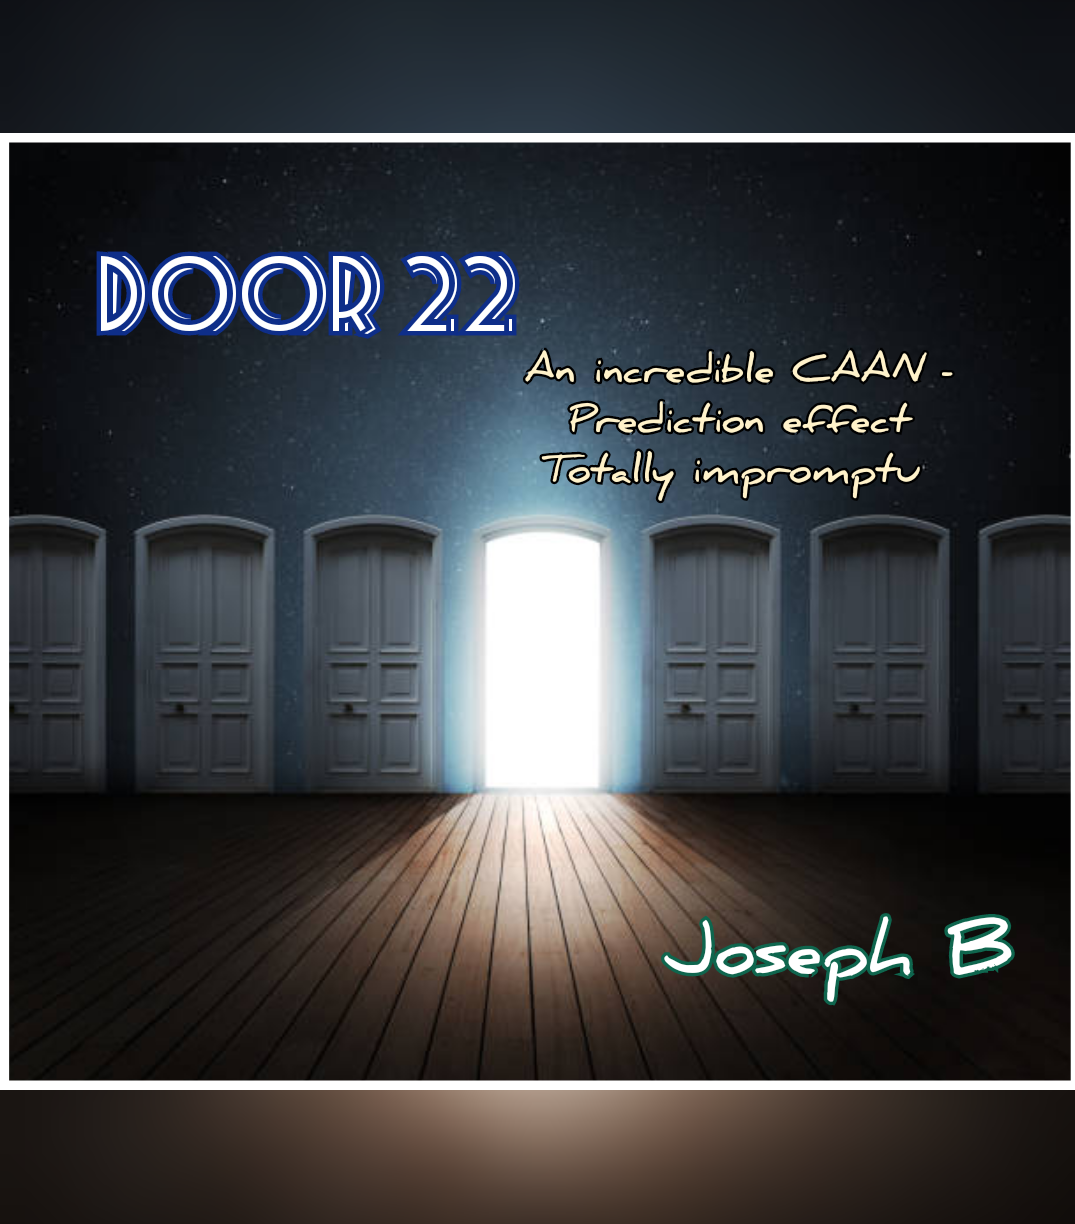 Joseph B. - DOOR22 (Caan prediction)